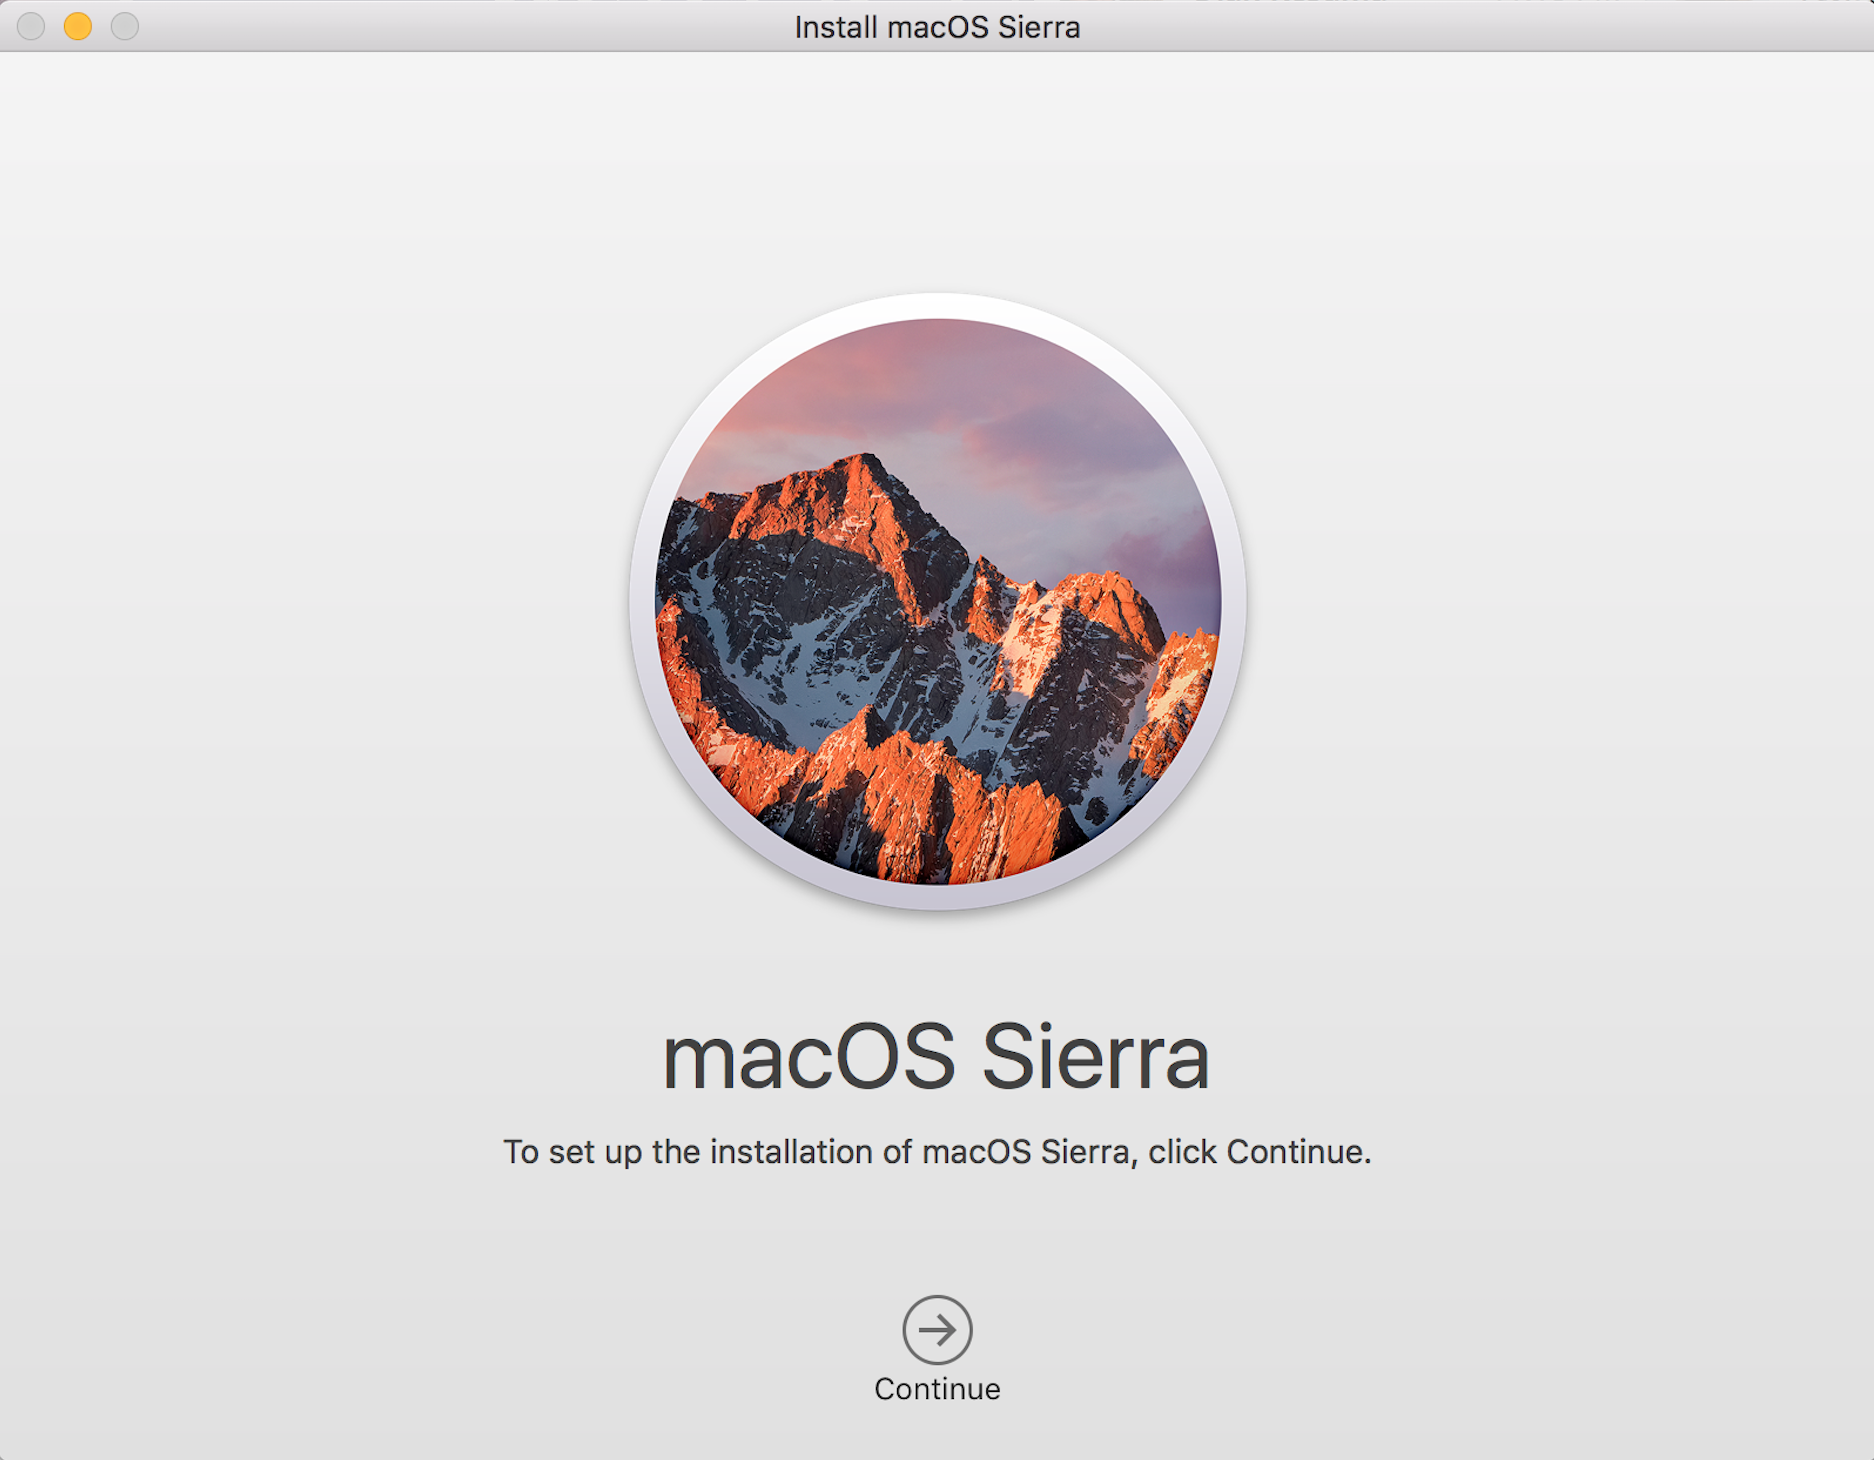 macOS Sierra installation